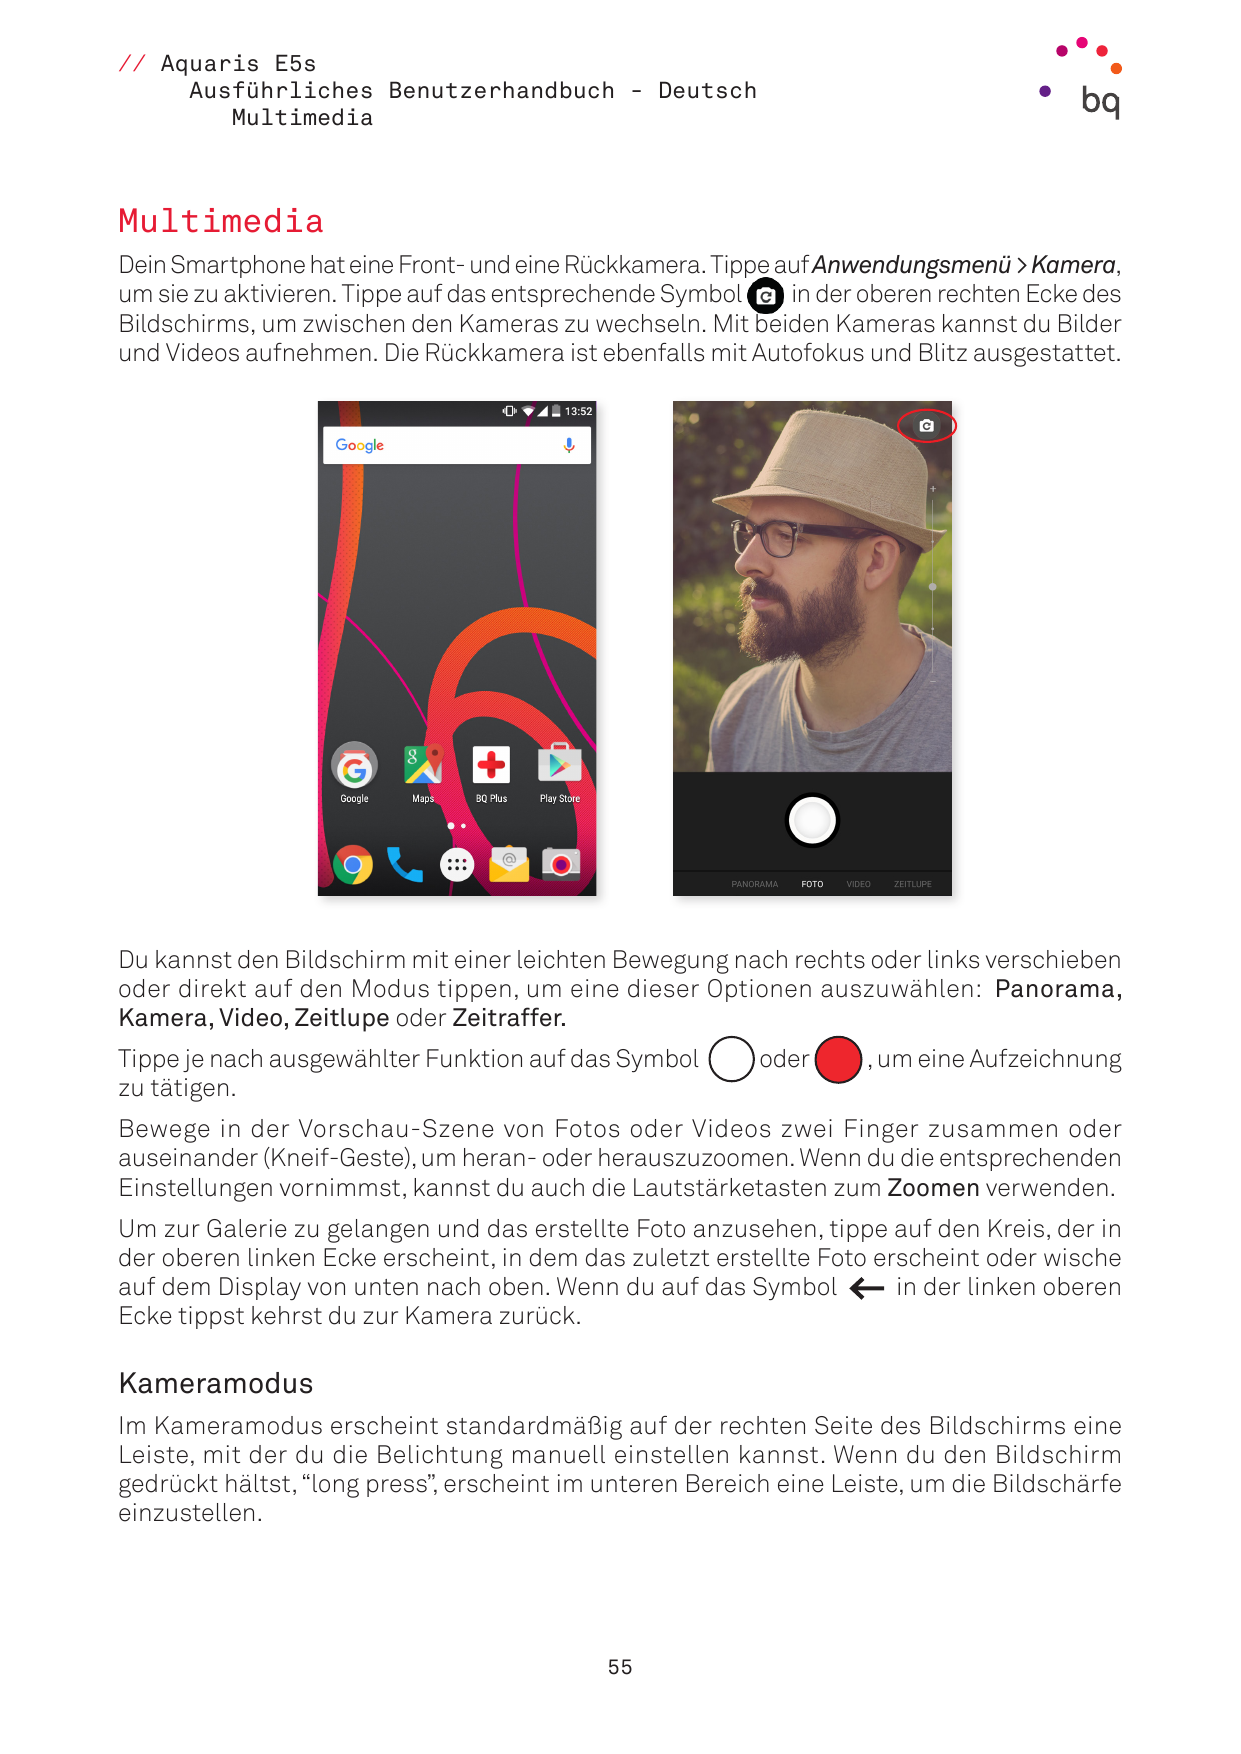 // Aquaris E5sAusführliches Benutzerhandbuch - DeutschMultimediaMultimediaDein Smartphone hat eine Front- und eine Rückkamera. T